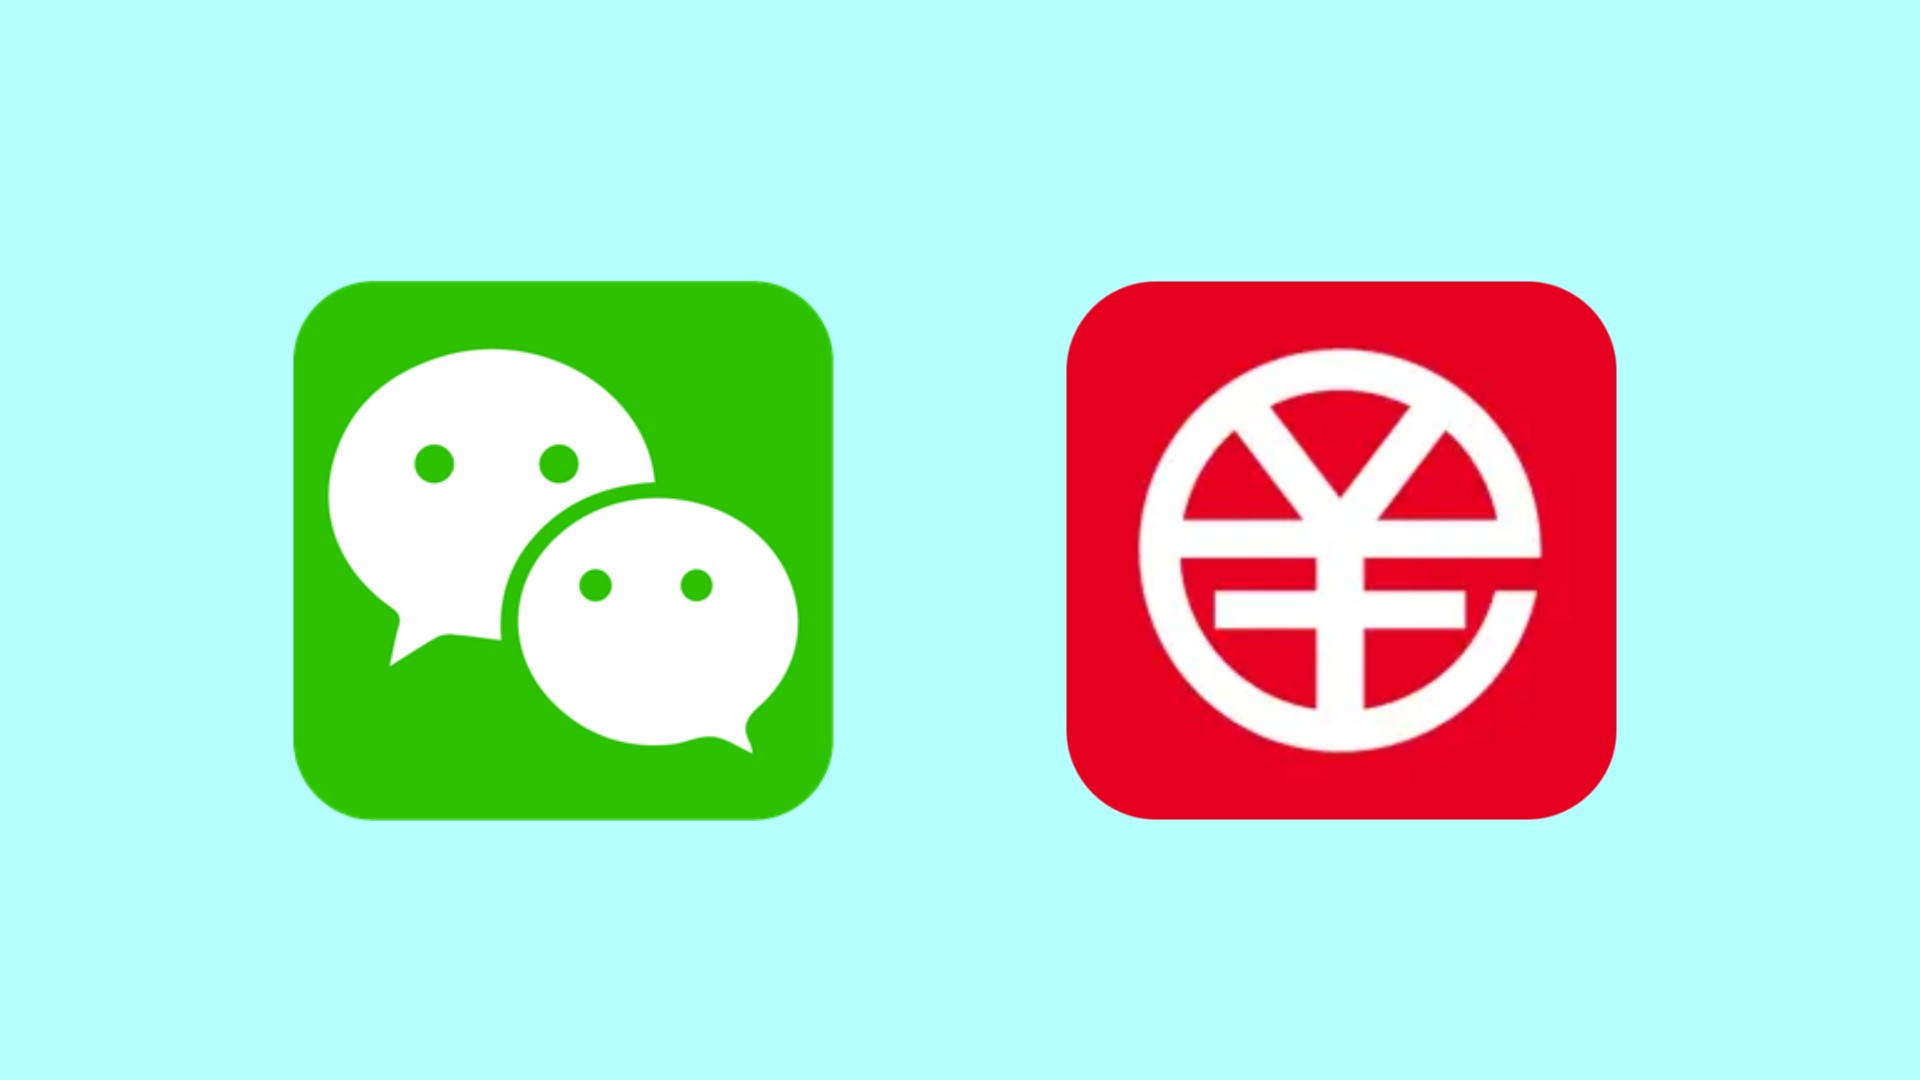 Le géant chinois des médias sociaux WeChat intègre le yuan numérique dans sa plateforme de paiement